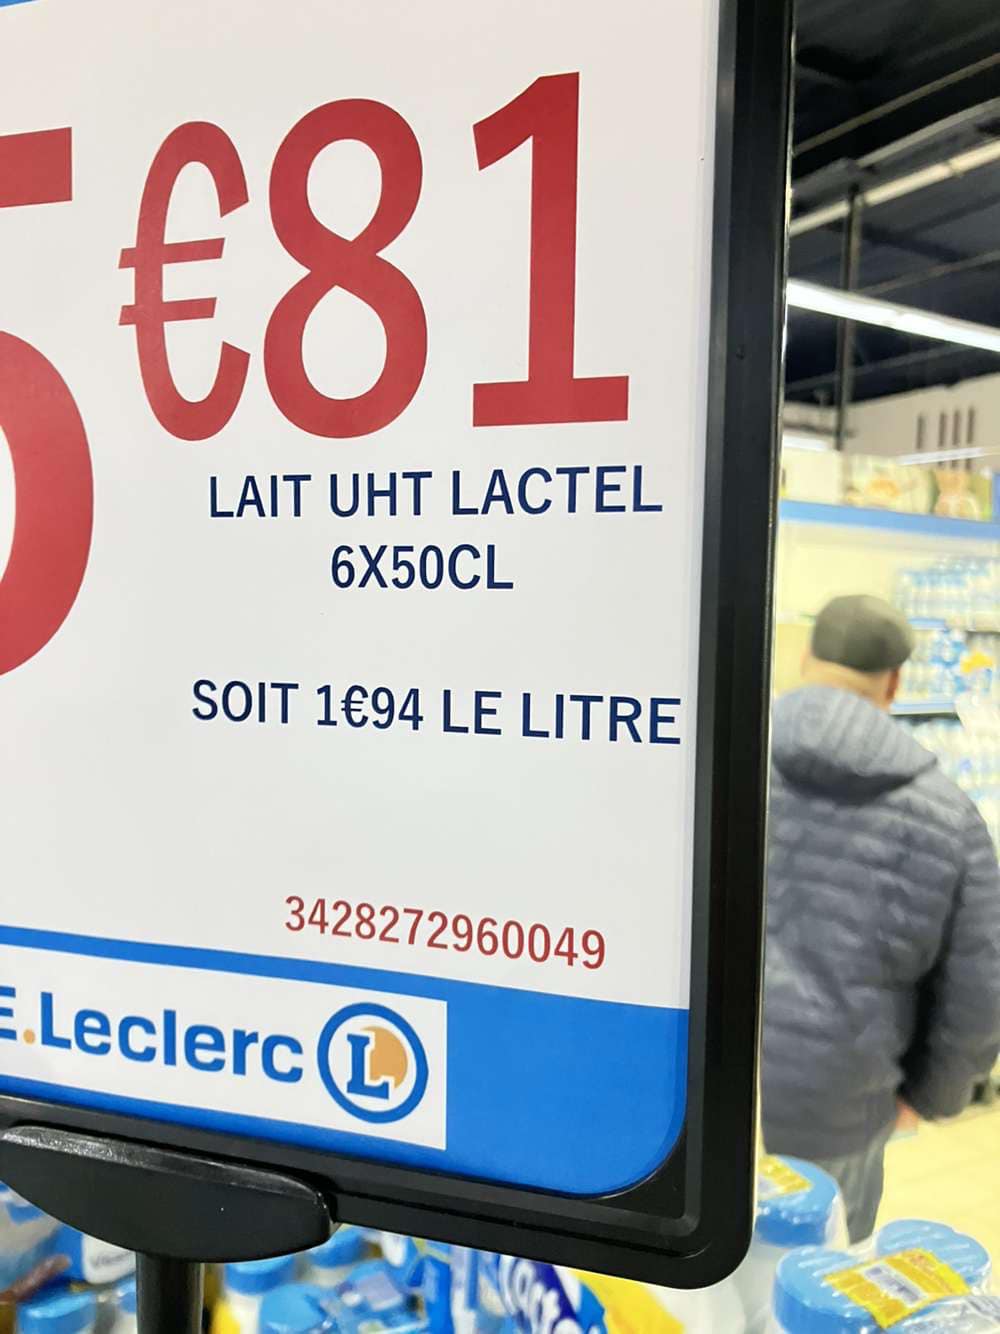 Le consommateur accepte de payer du lait 1,94 €/L, un lait payé en décembre à peine 405 €/1000 L !